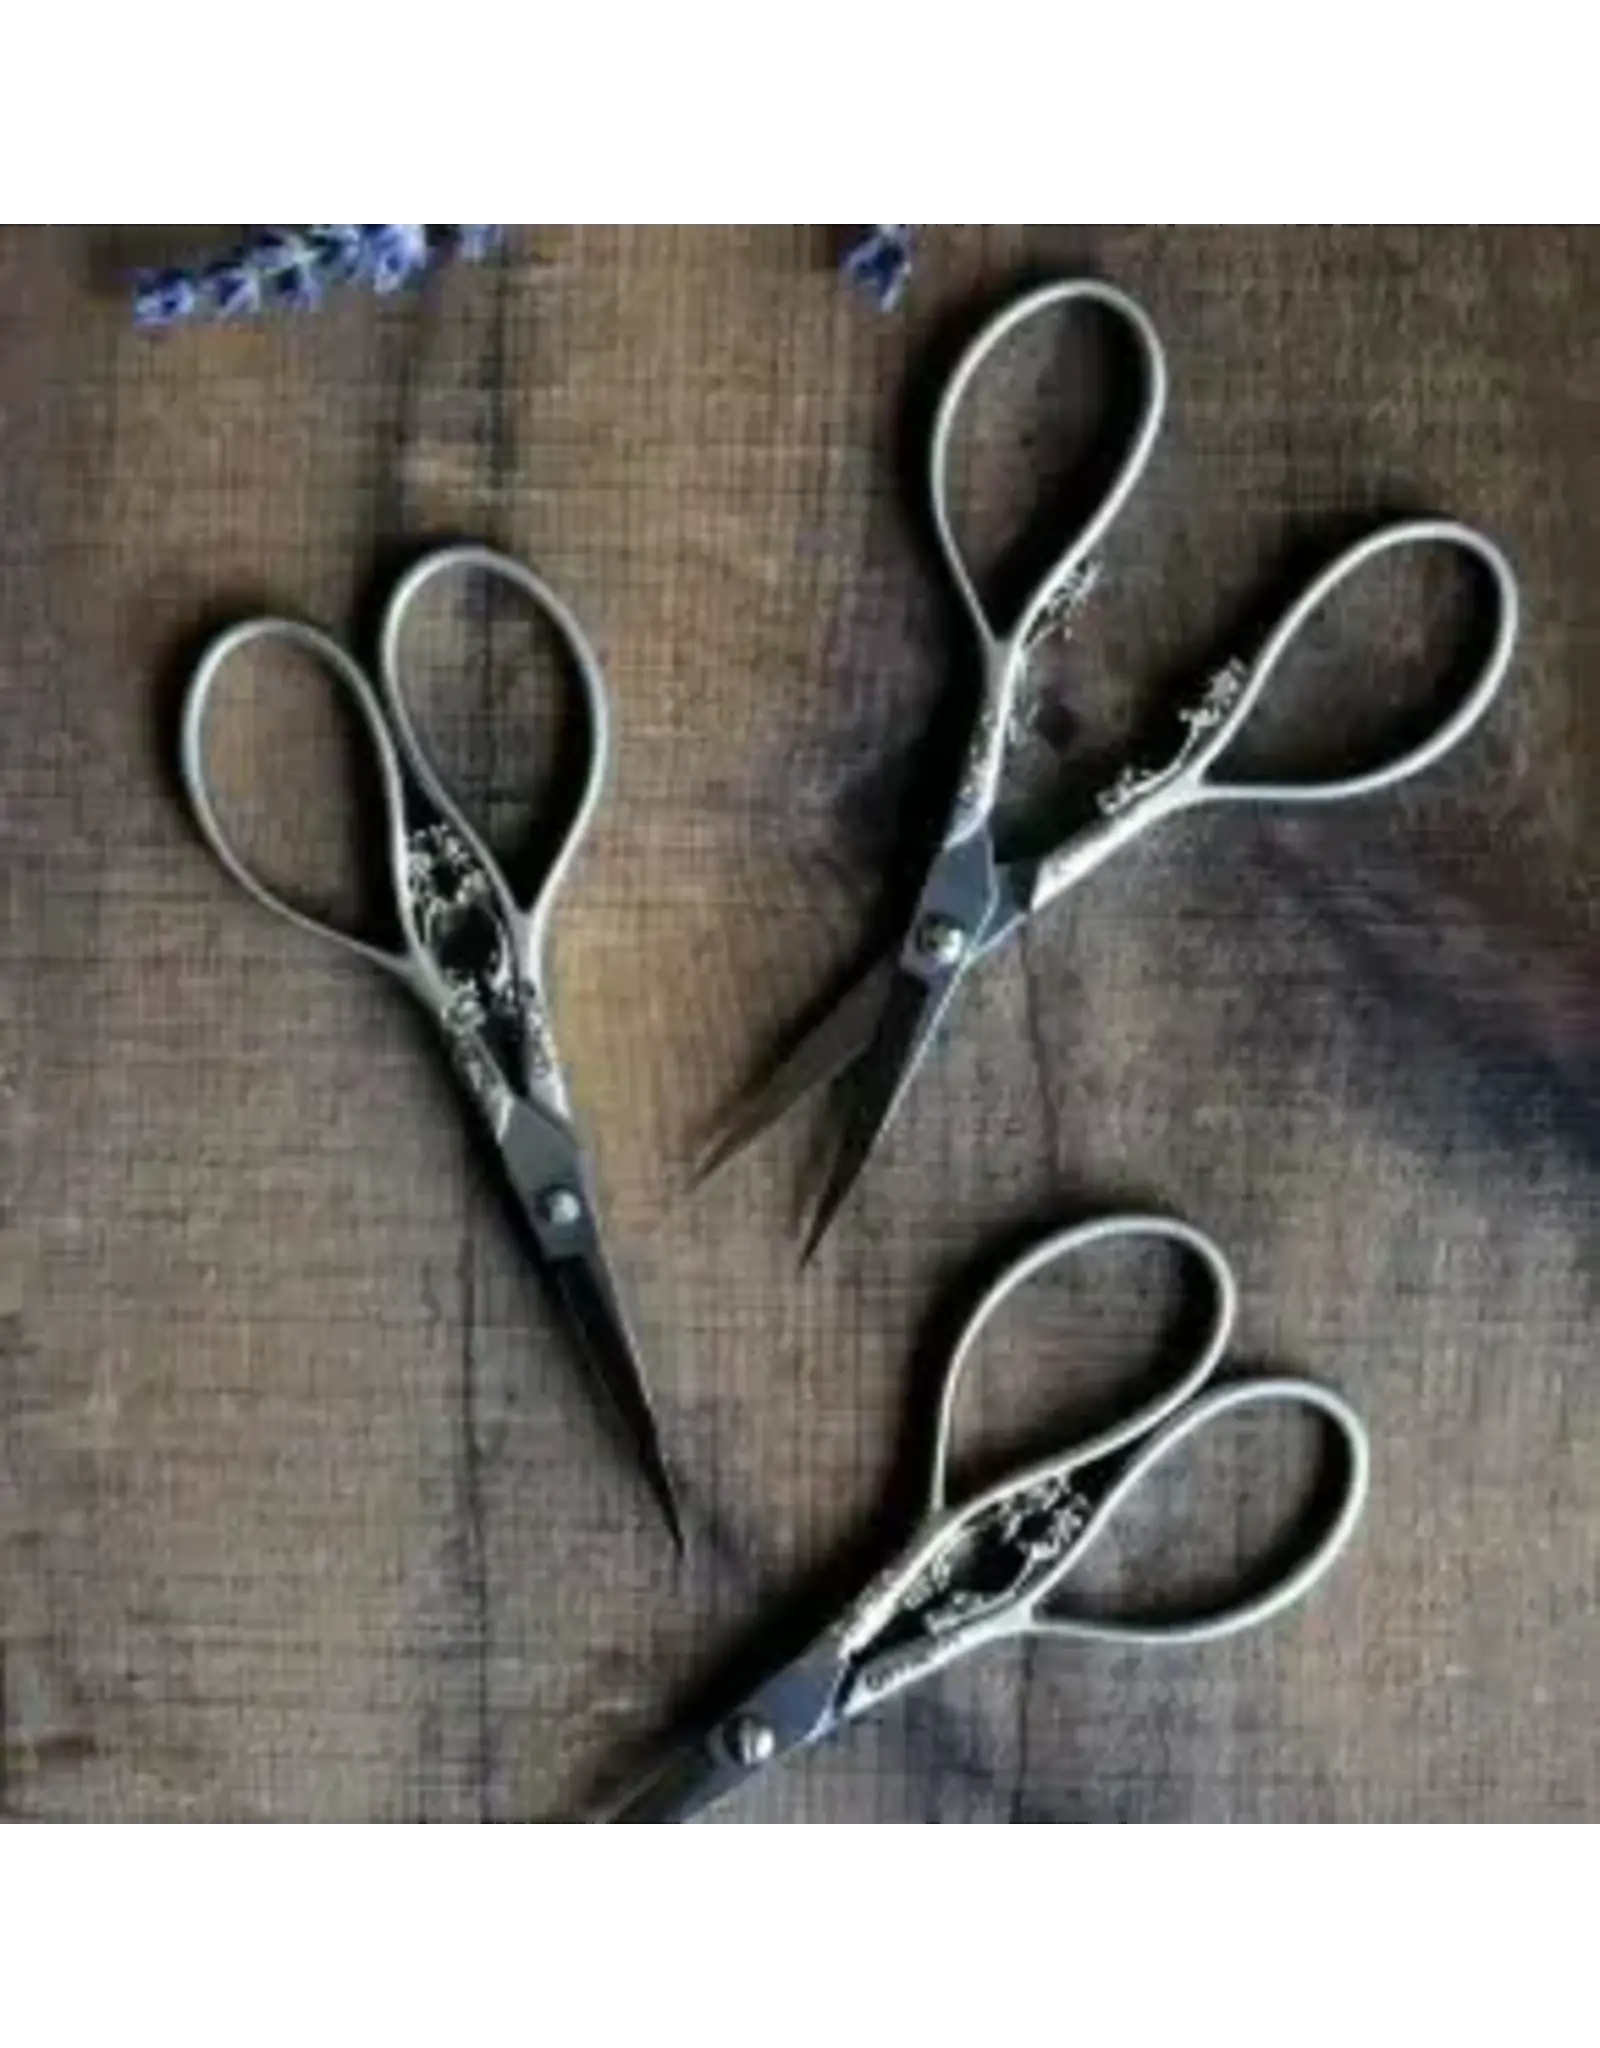 NNK Press Floral Teardrop Scissors - Antique Copper - NNK Press